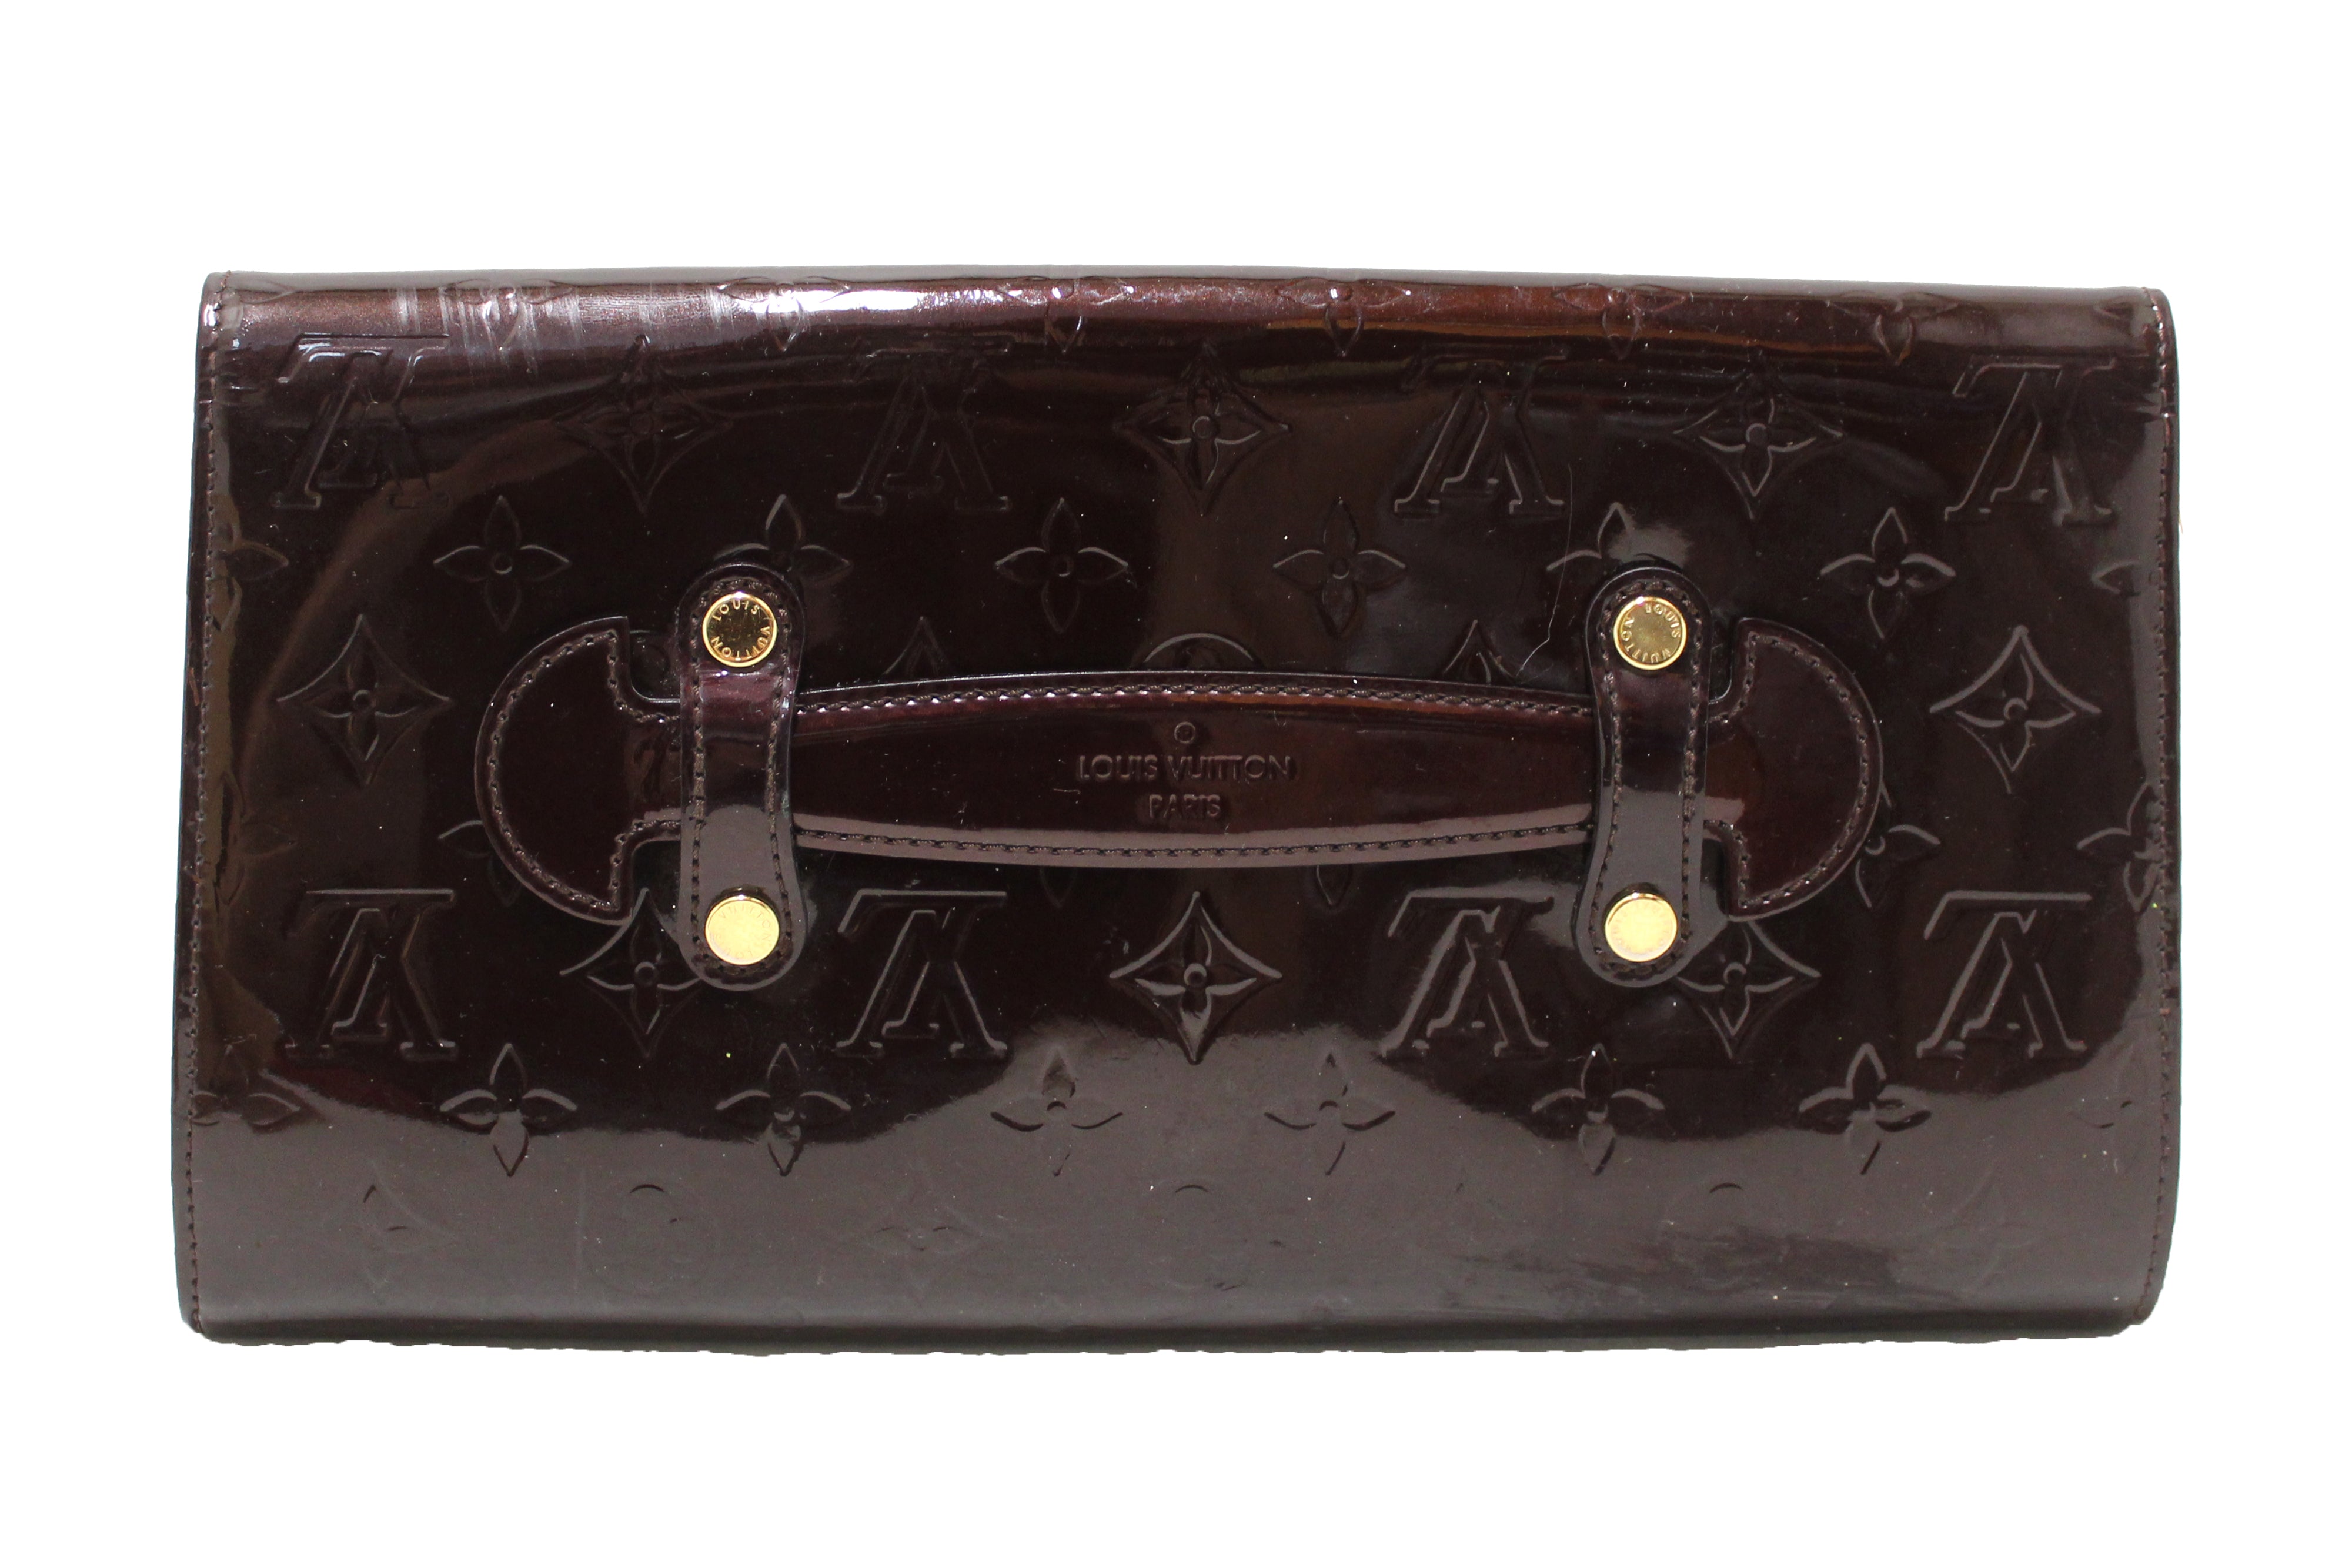 Authentic Louis Vuitton Amarante Monogram Vernis Leather Robertson Clutch